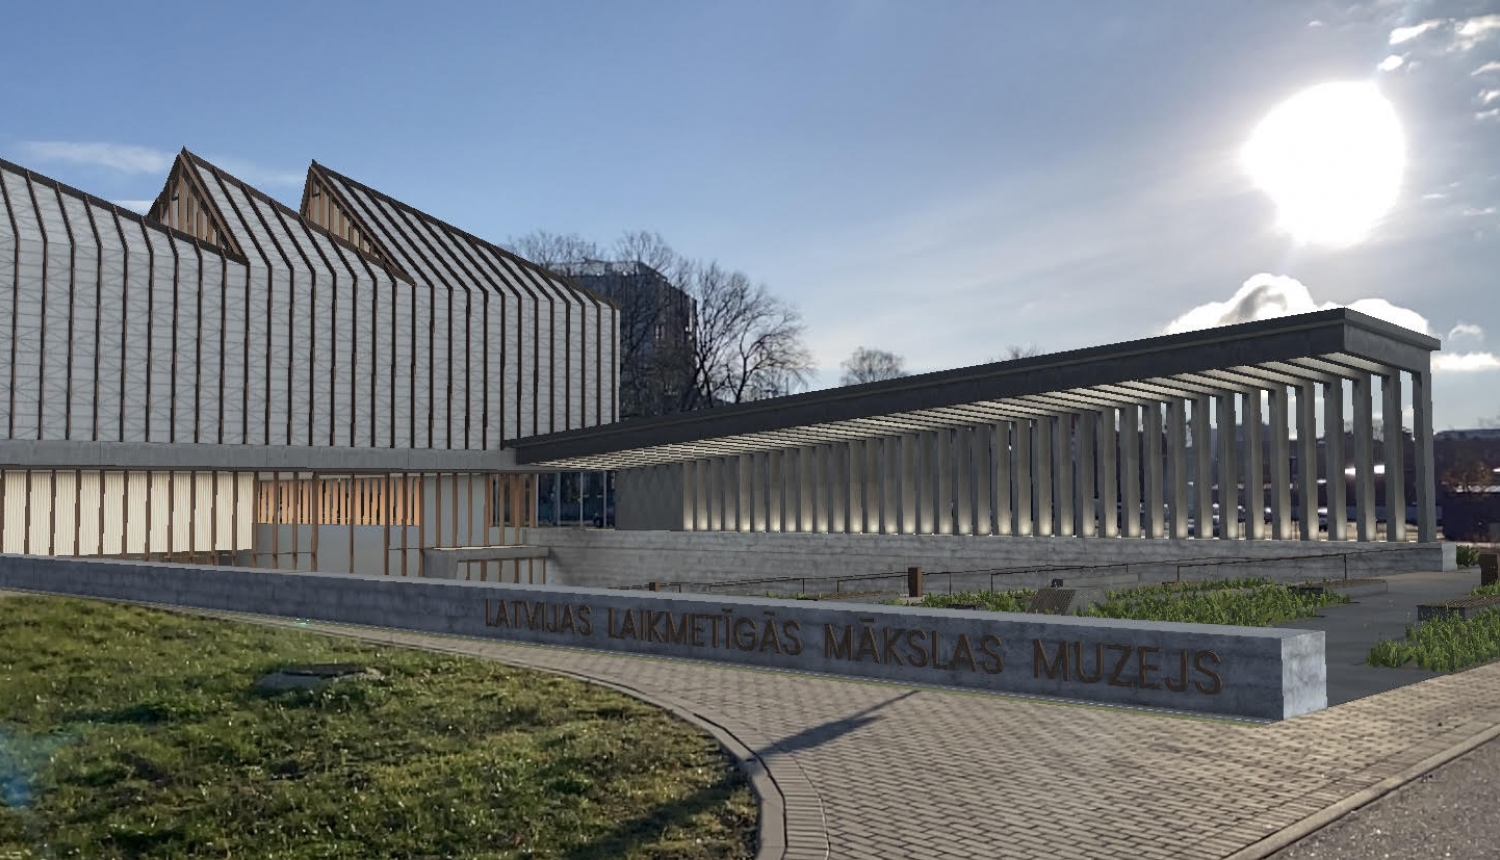 Latvijas Laikmetīgās mākslas muzeja paplašinātās realitātes modelis